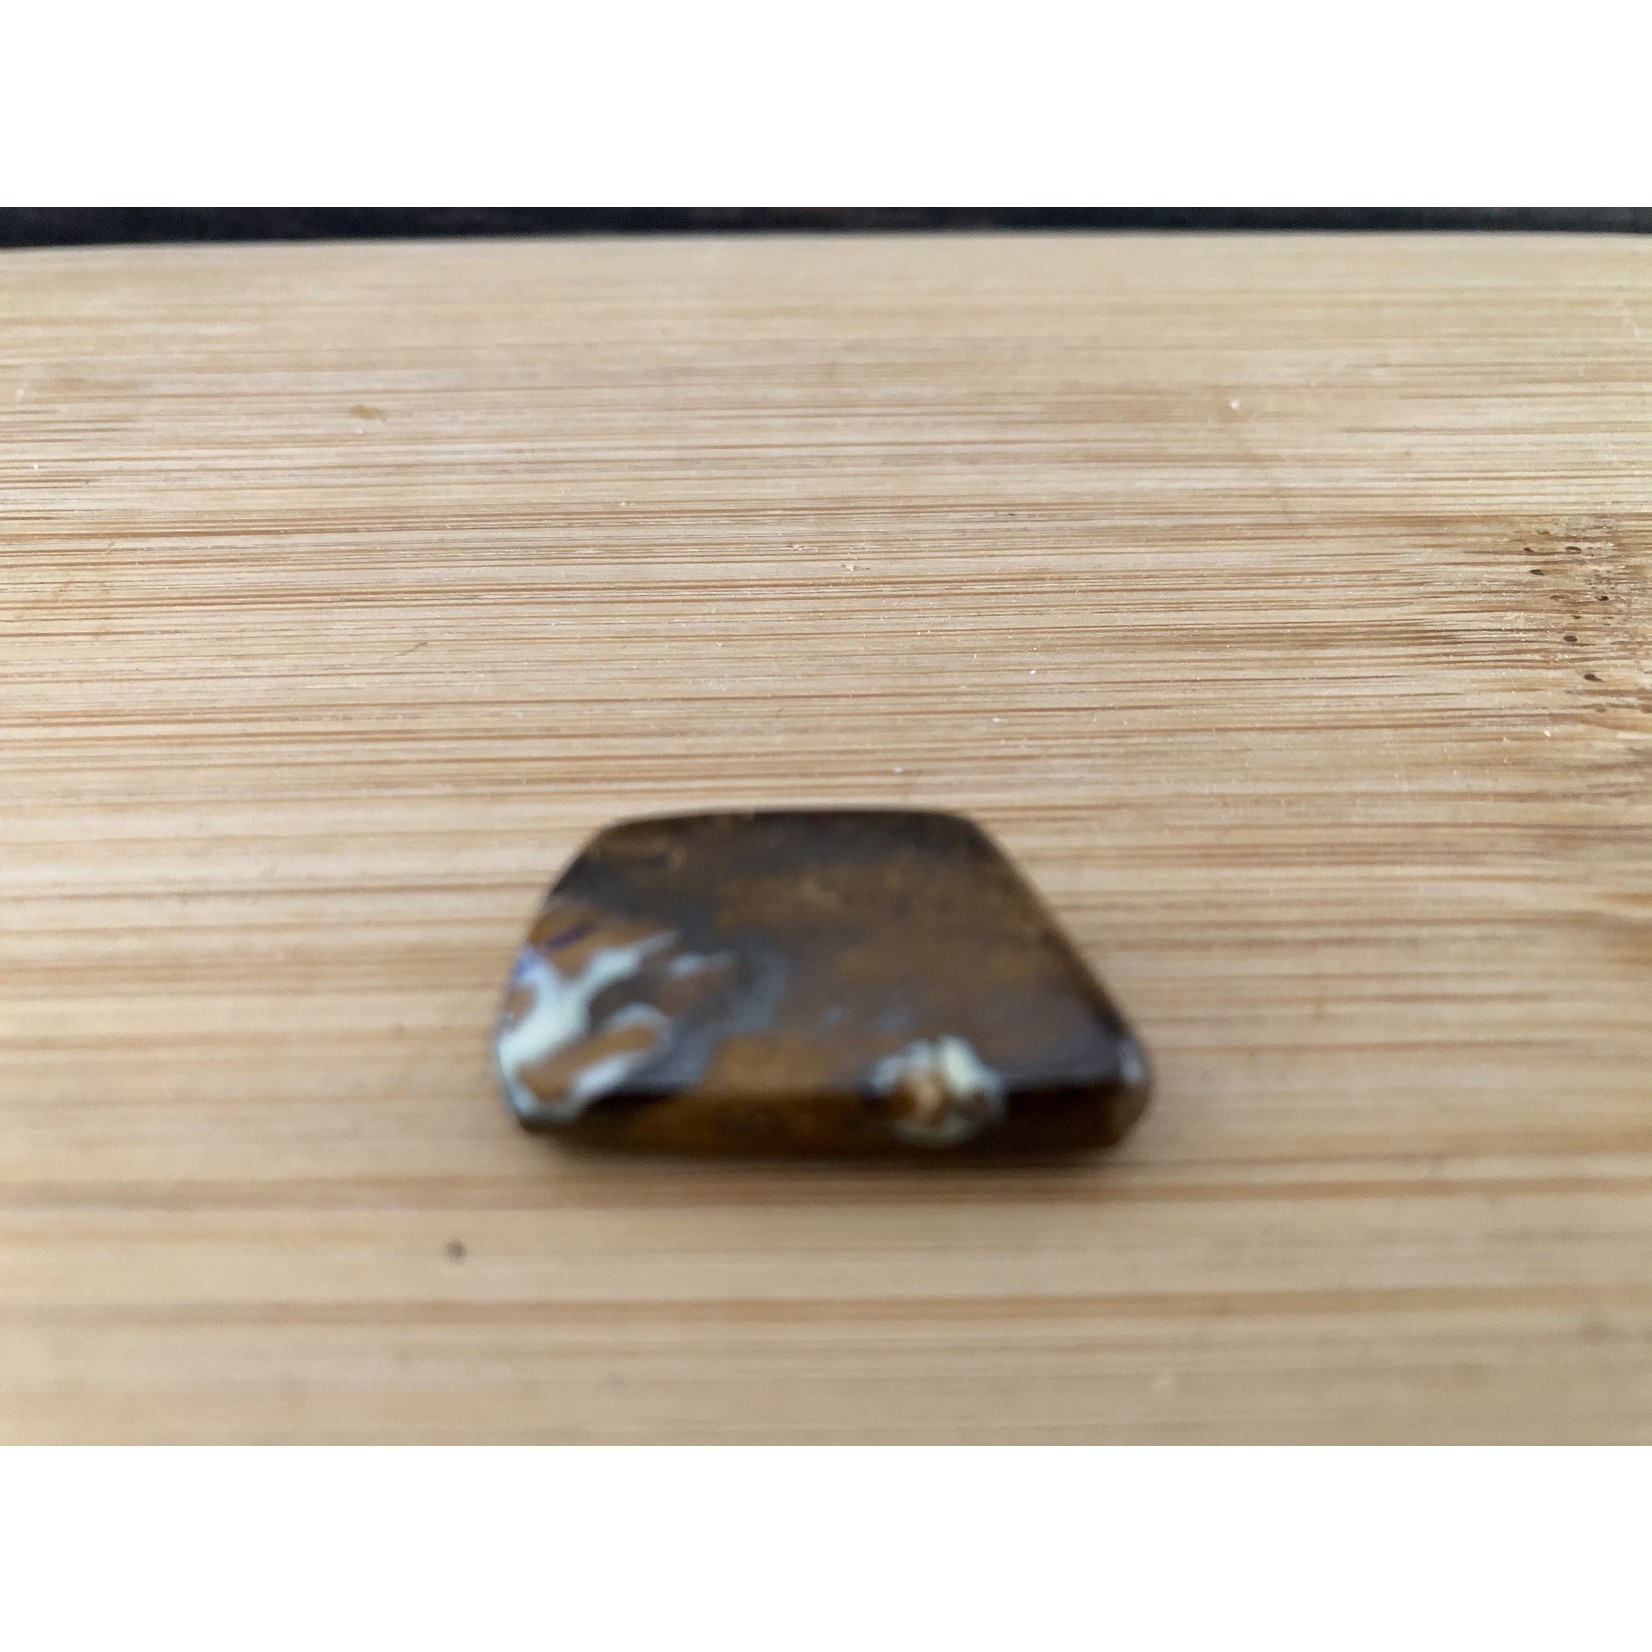 opale boulder pierre de paume de main